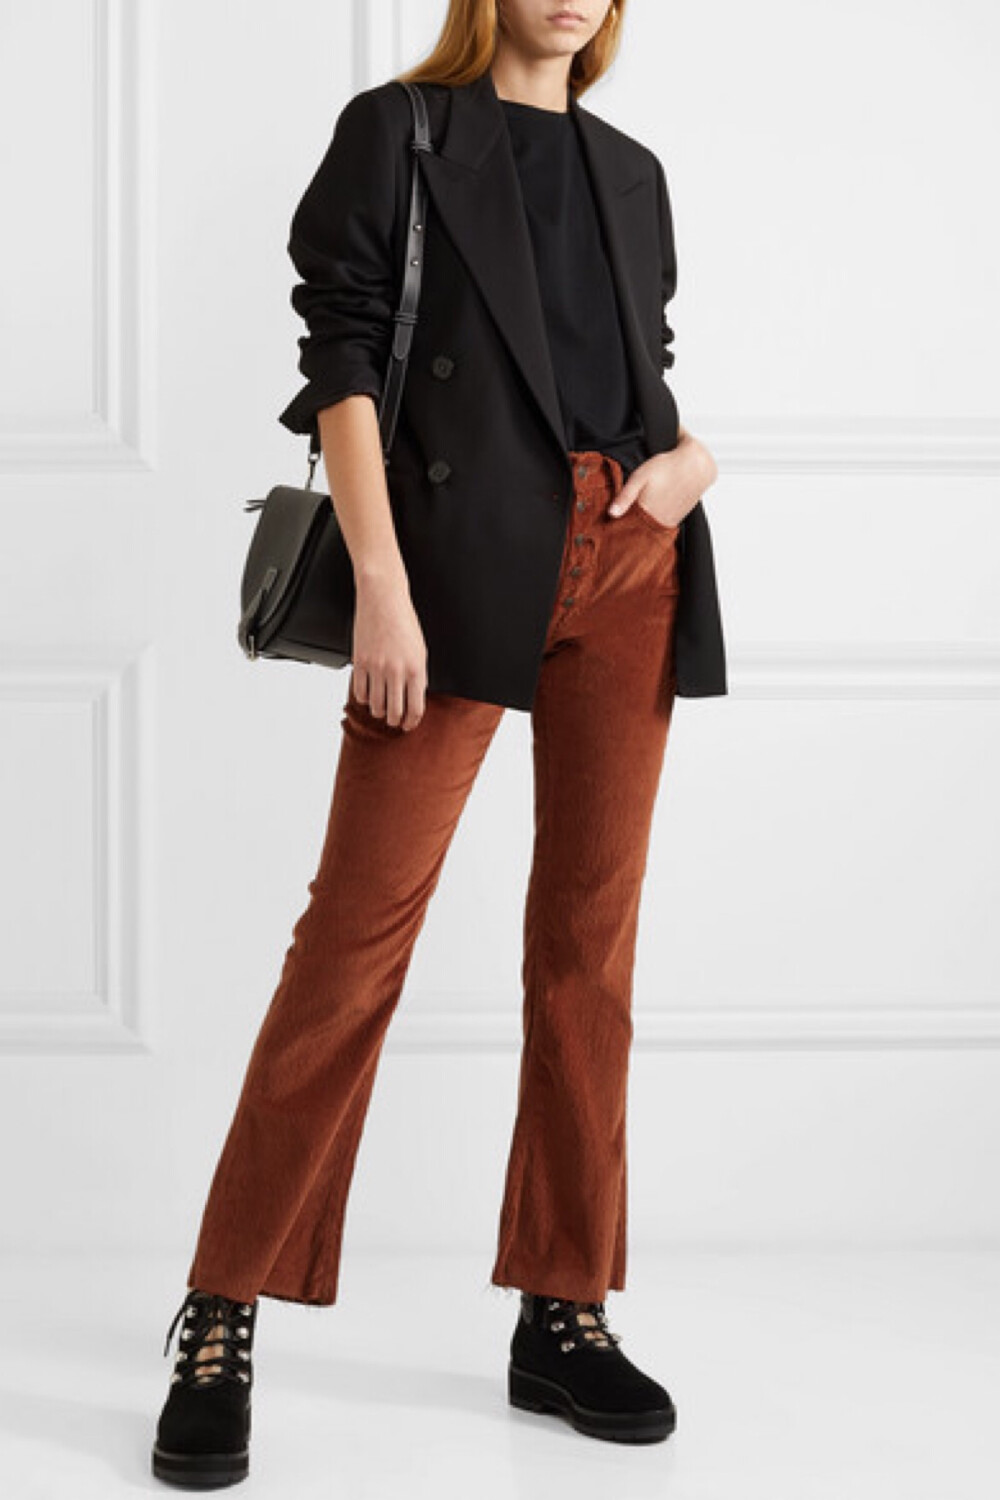 MM6 Maison Margiela 以传统英伦风范与 1970 年代风尚为灵感，打造出这款充满复古格调的长裤。它采用绒软的纯棉灯芯绒制成，正面的单排抛光金色纽扣与砖红色调完美呼应。不妨把毛衣的下摆束进裤腰，搭配踝靴穿着。